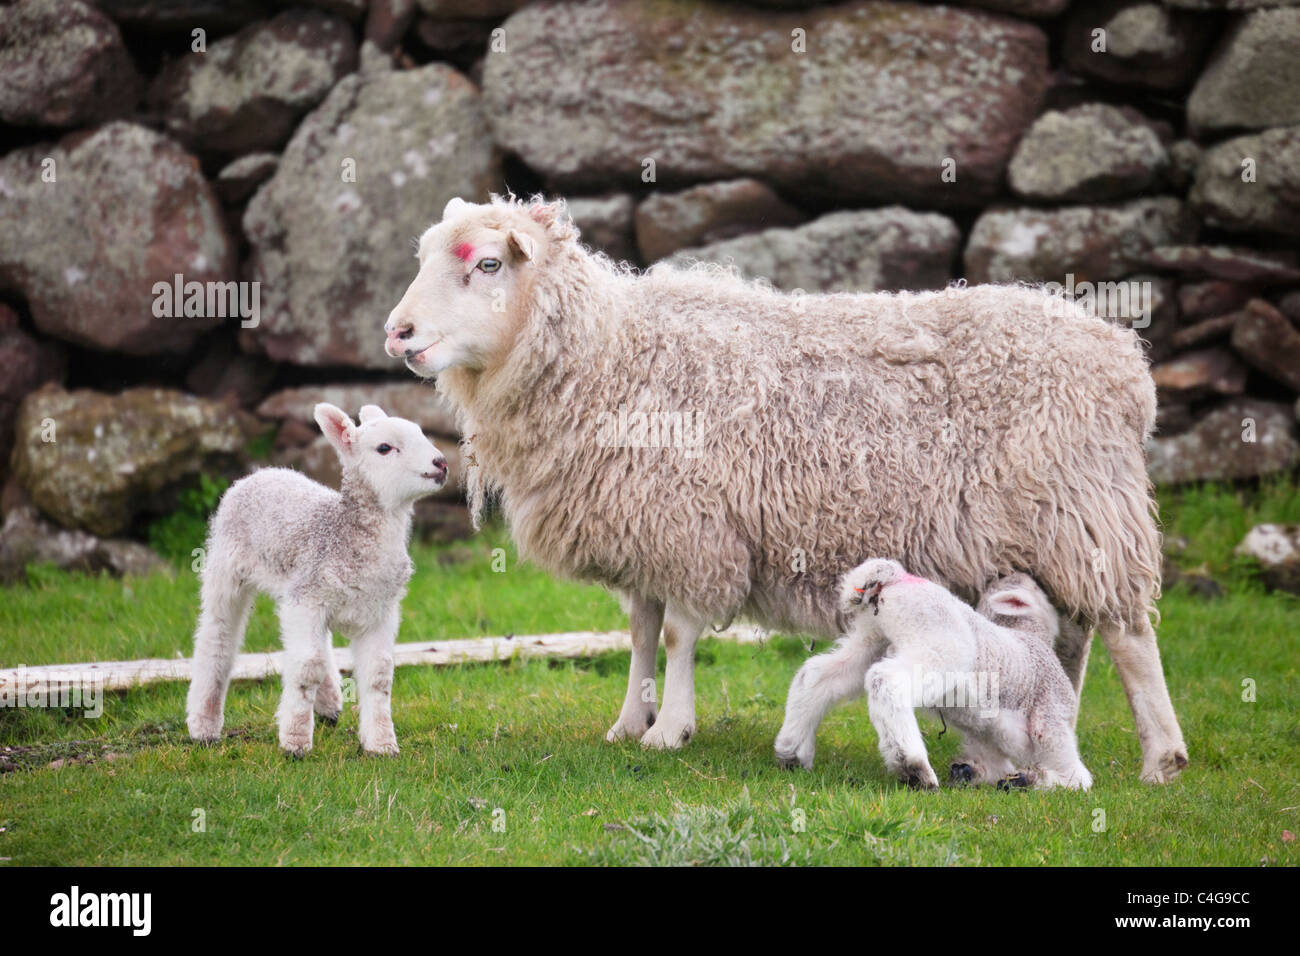 Oveja oveja con dos jóvenes dos corderos recién nacidos por un muro de piedra en la campiña escocesa en primavera o principios del verano. Islas Shetland Scotland Reino Unido Gran Bretaña Foto de stock